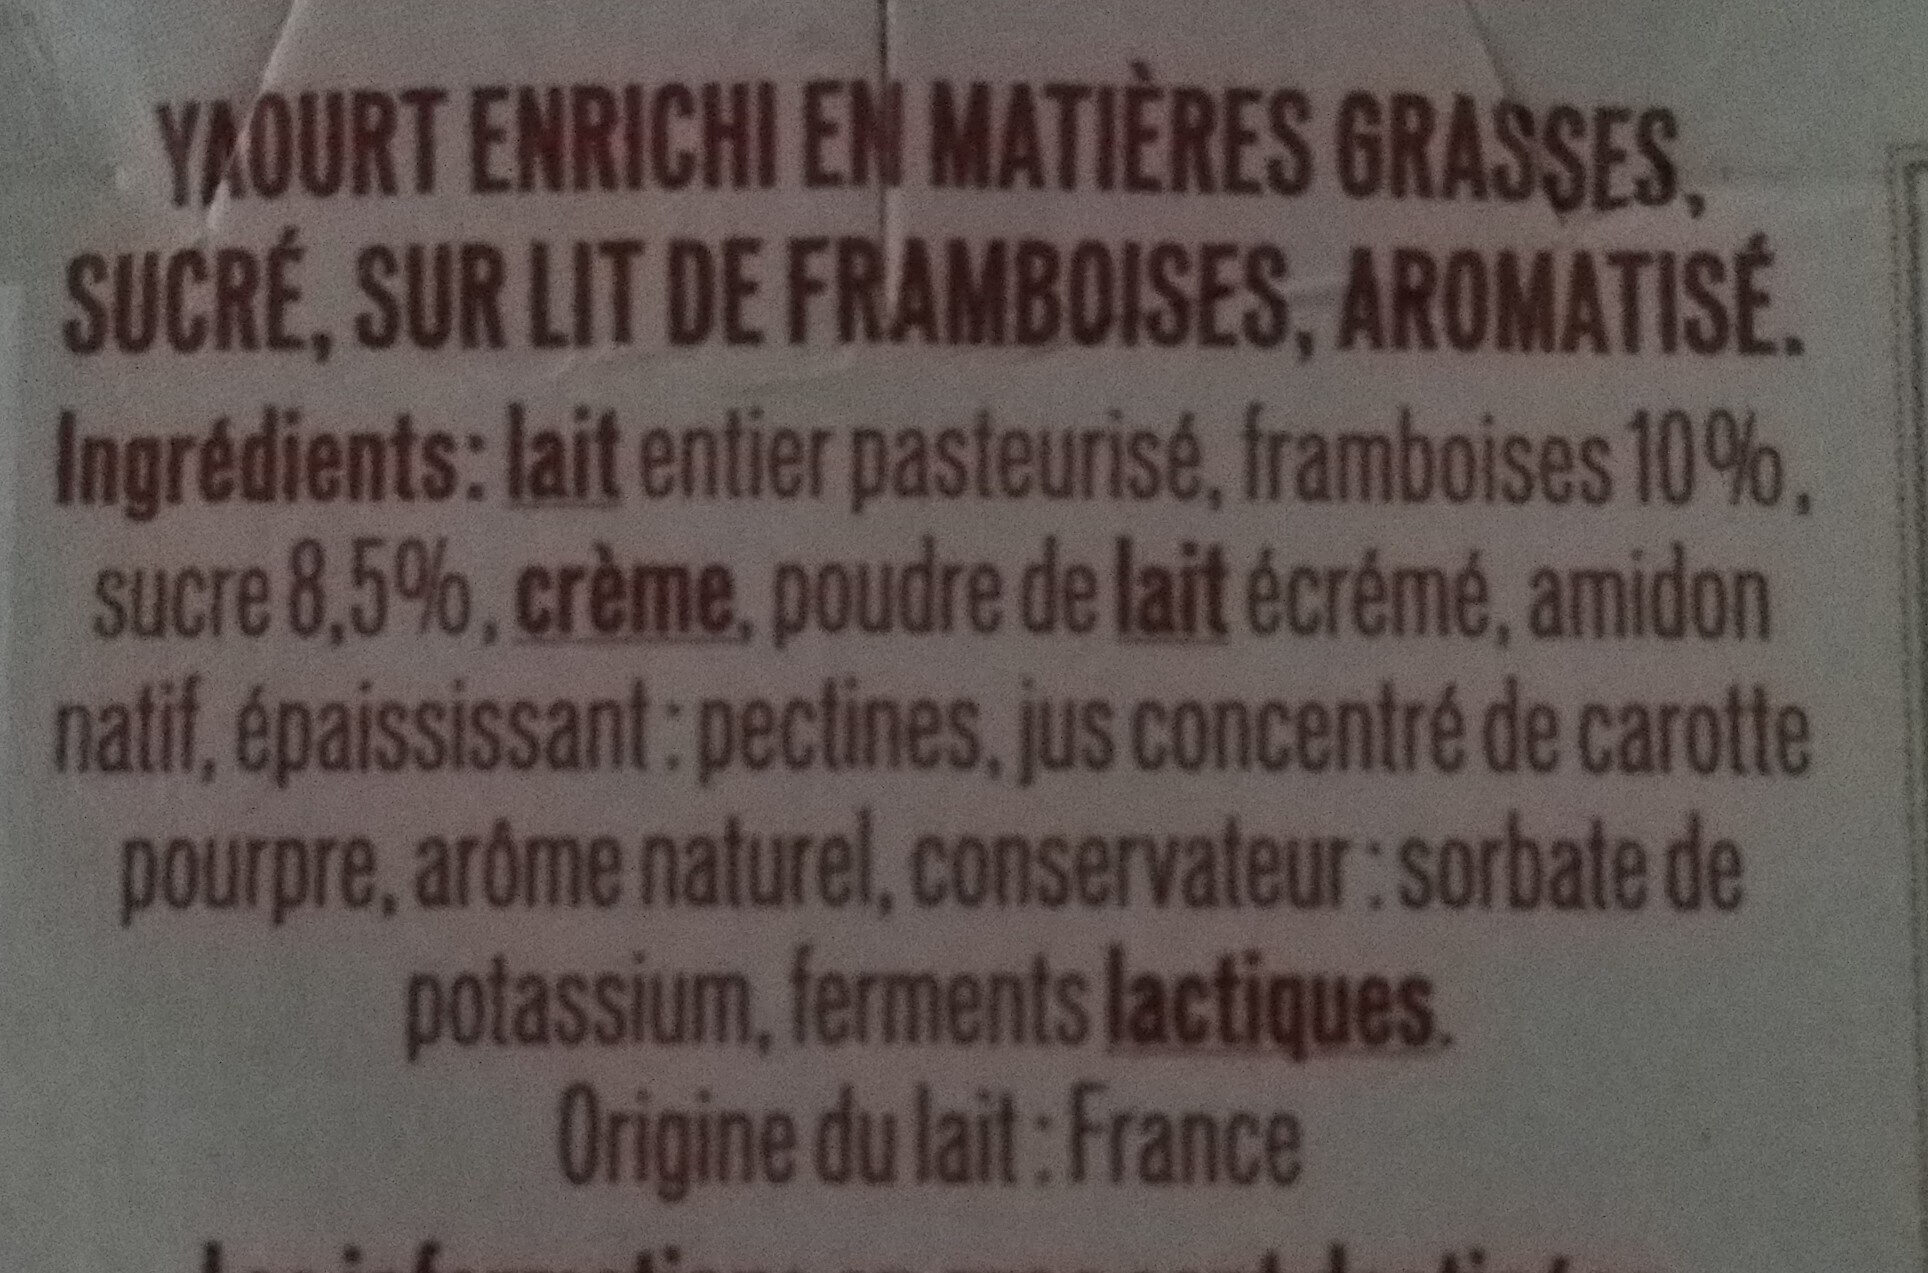 Le crémeux framboise - Ingredients - fr